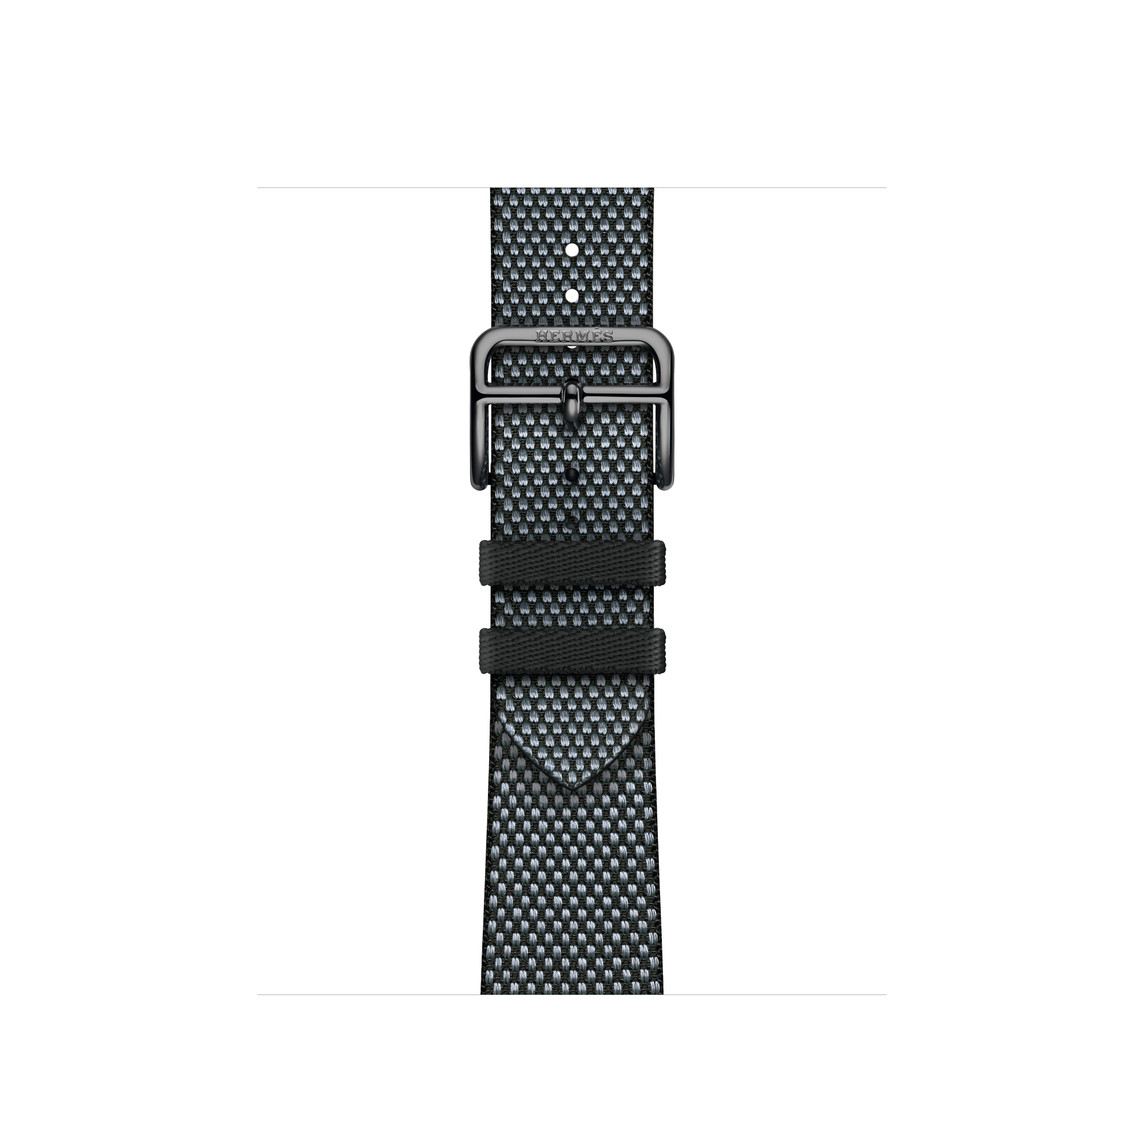 Toile H Single Tour Armband in Noir (Schwarz) und Denim (Blau), Textilgewebe mit silberner Schließe aus Edelstahl.